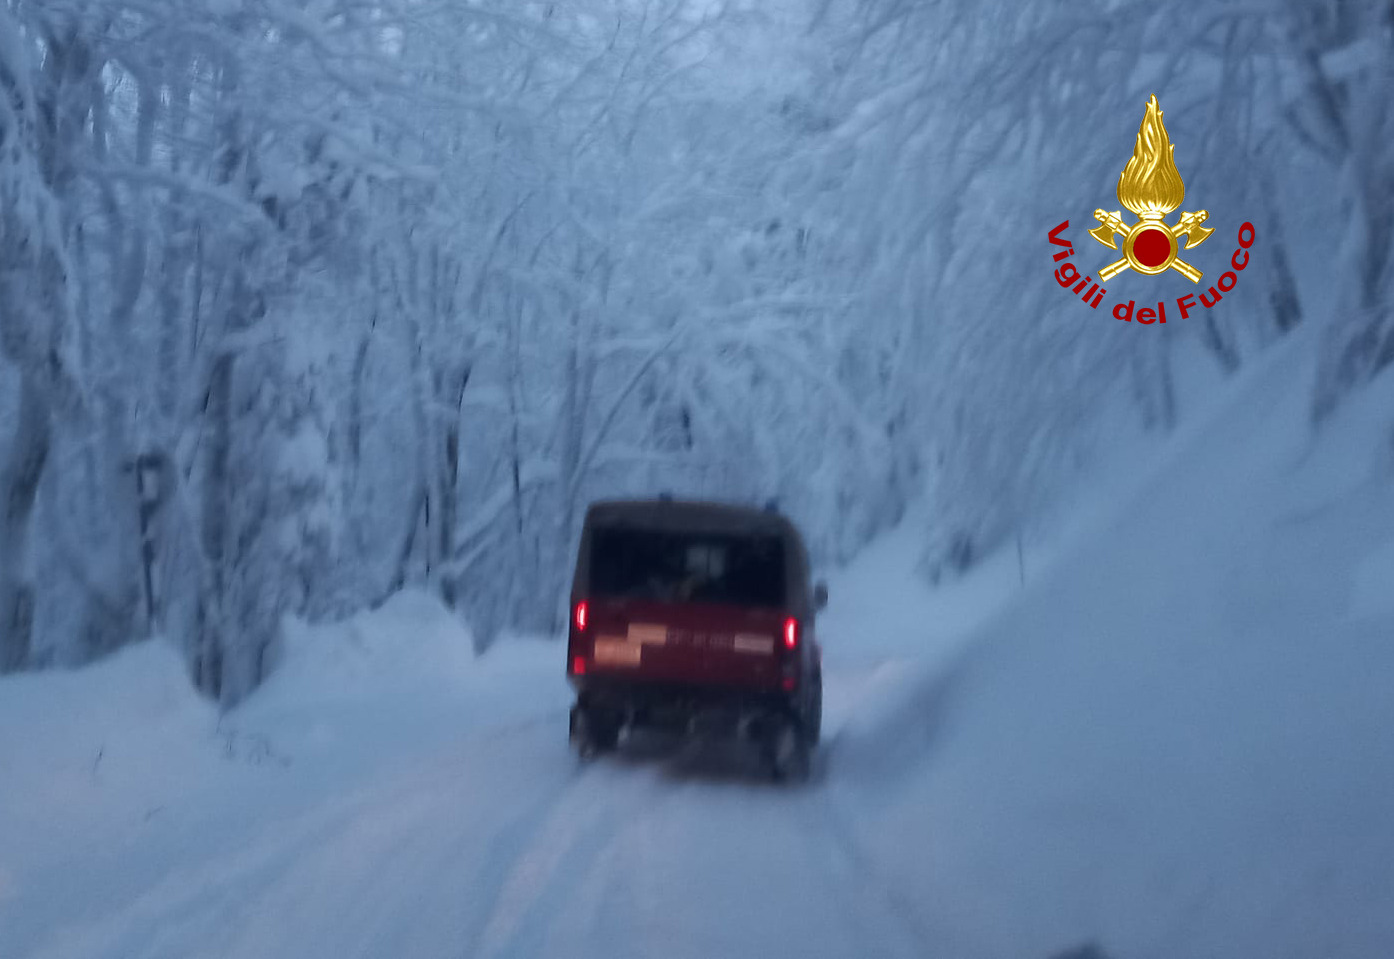 Consigli utili di guida sulla neve! - Arezzo Meteo